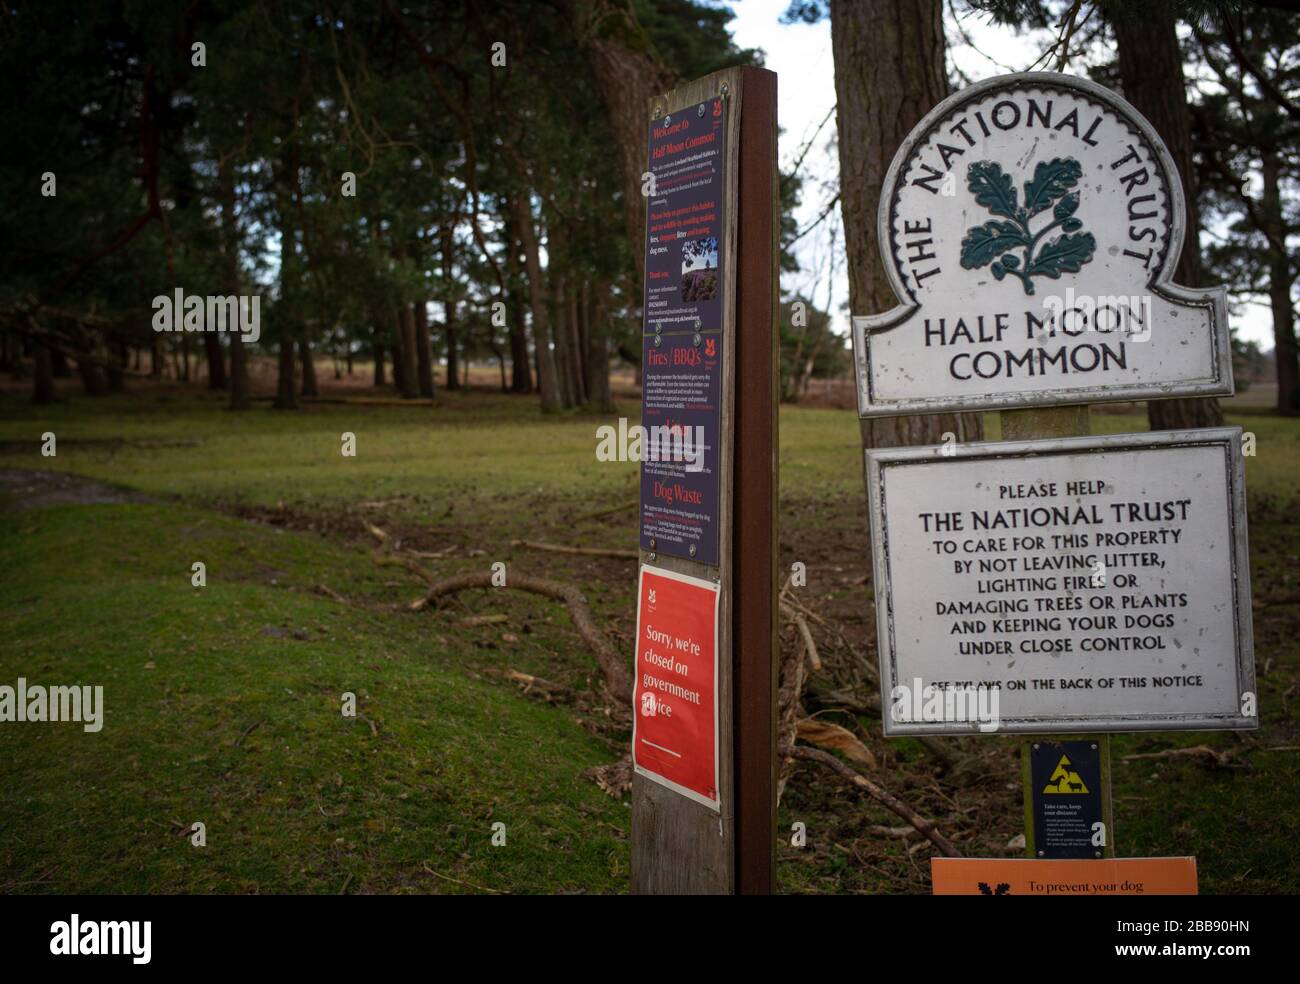 Ein Schild über das Land des nationalen Vertrauens, das besagt, dass wir auf Regierungsraten geschlossen sind. Das Land ist Half Moon Common am Rande des New Forest Hampshire. Stockfoto